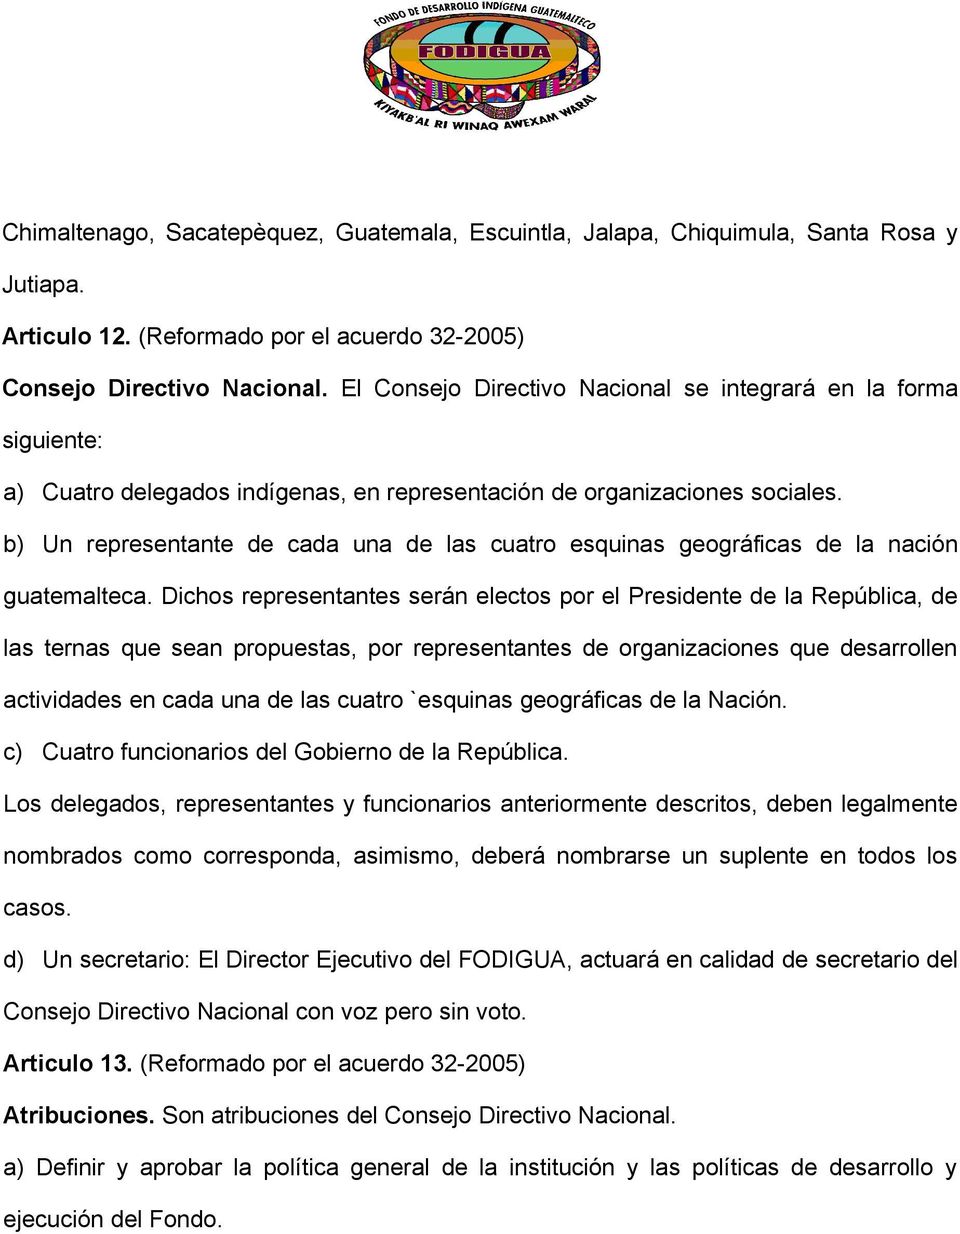 b) Un representante de cada una de las cuatro esquinas geográficas de la nación guatemalteca.